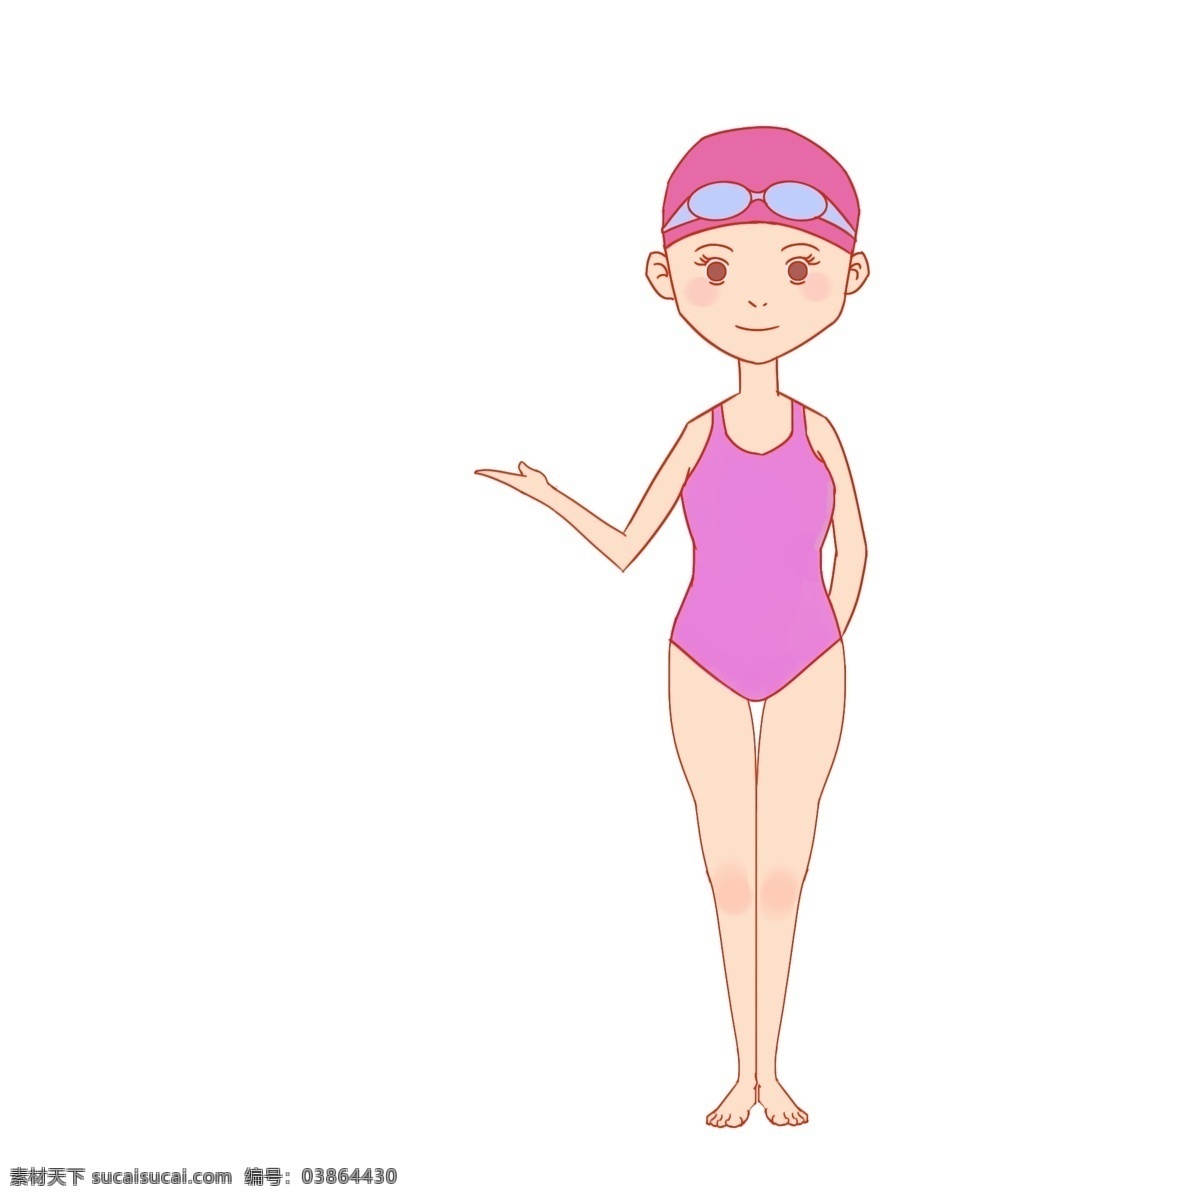 纯 手绘 女 跳水 运动员 女性运动员 中国 梦之队 卡通 健身 游泳 游泳馆 安全 须知 注意事项 宣传 宣传栏 全民运动